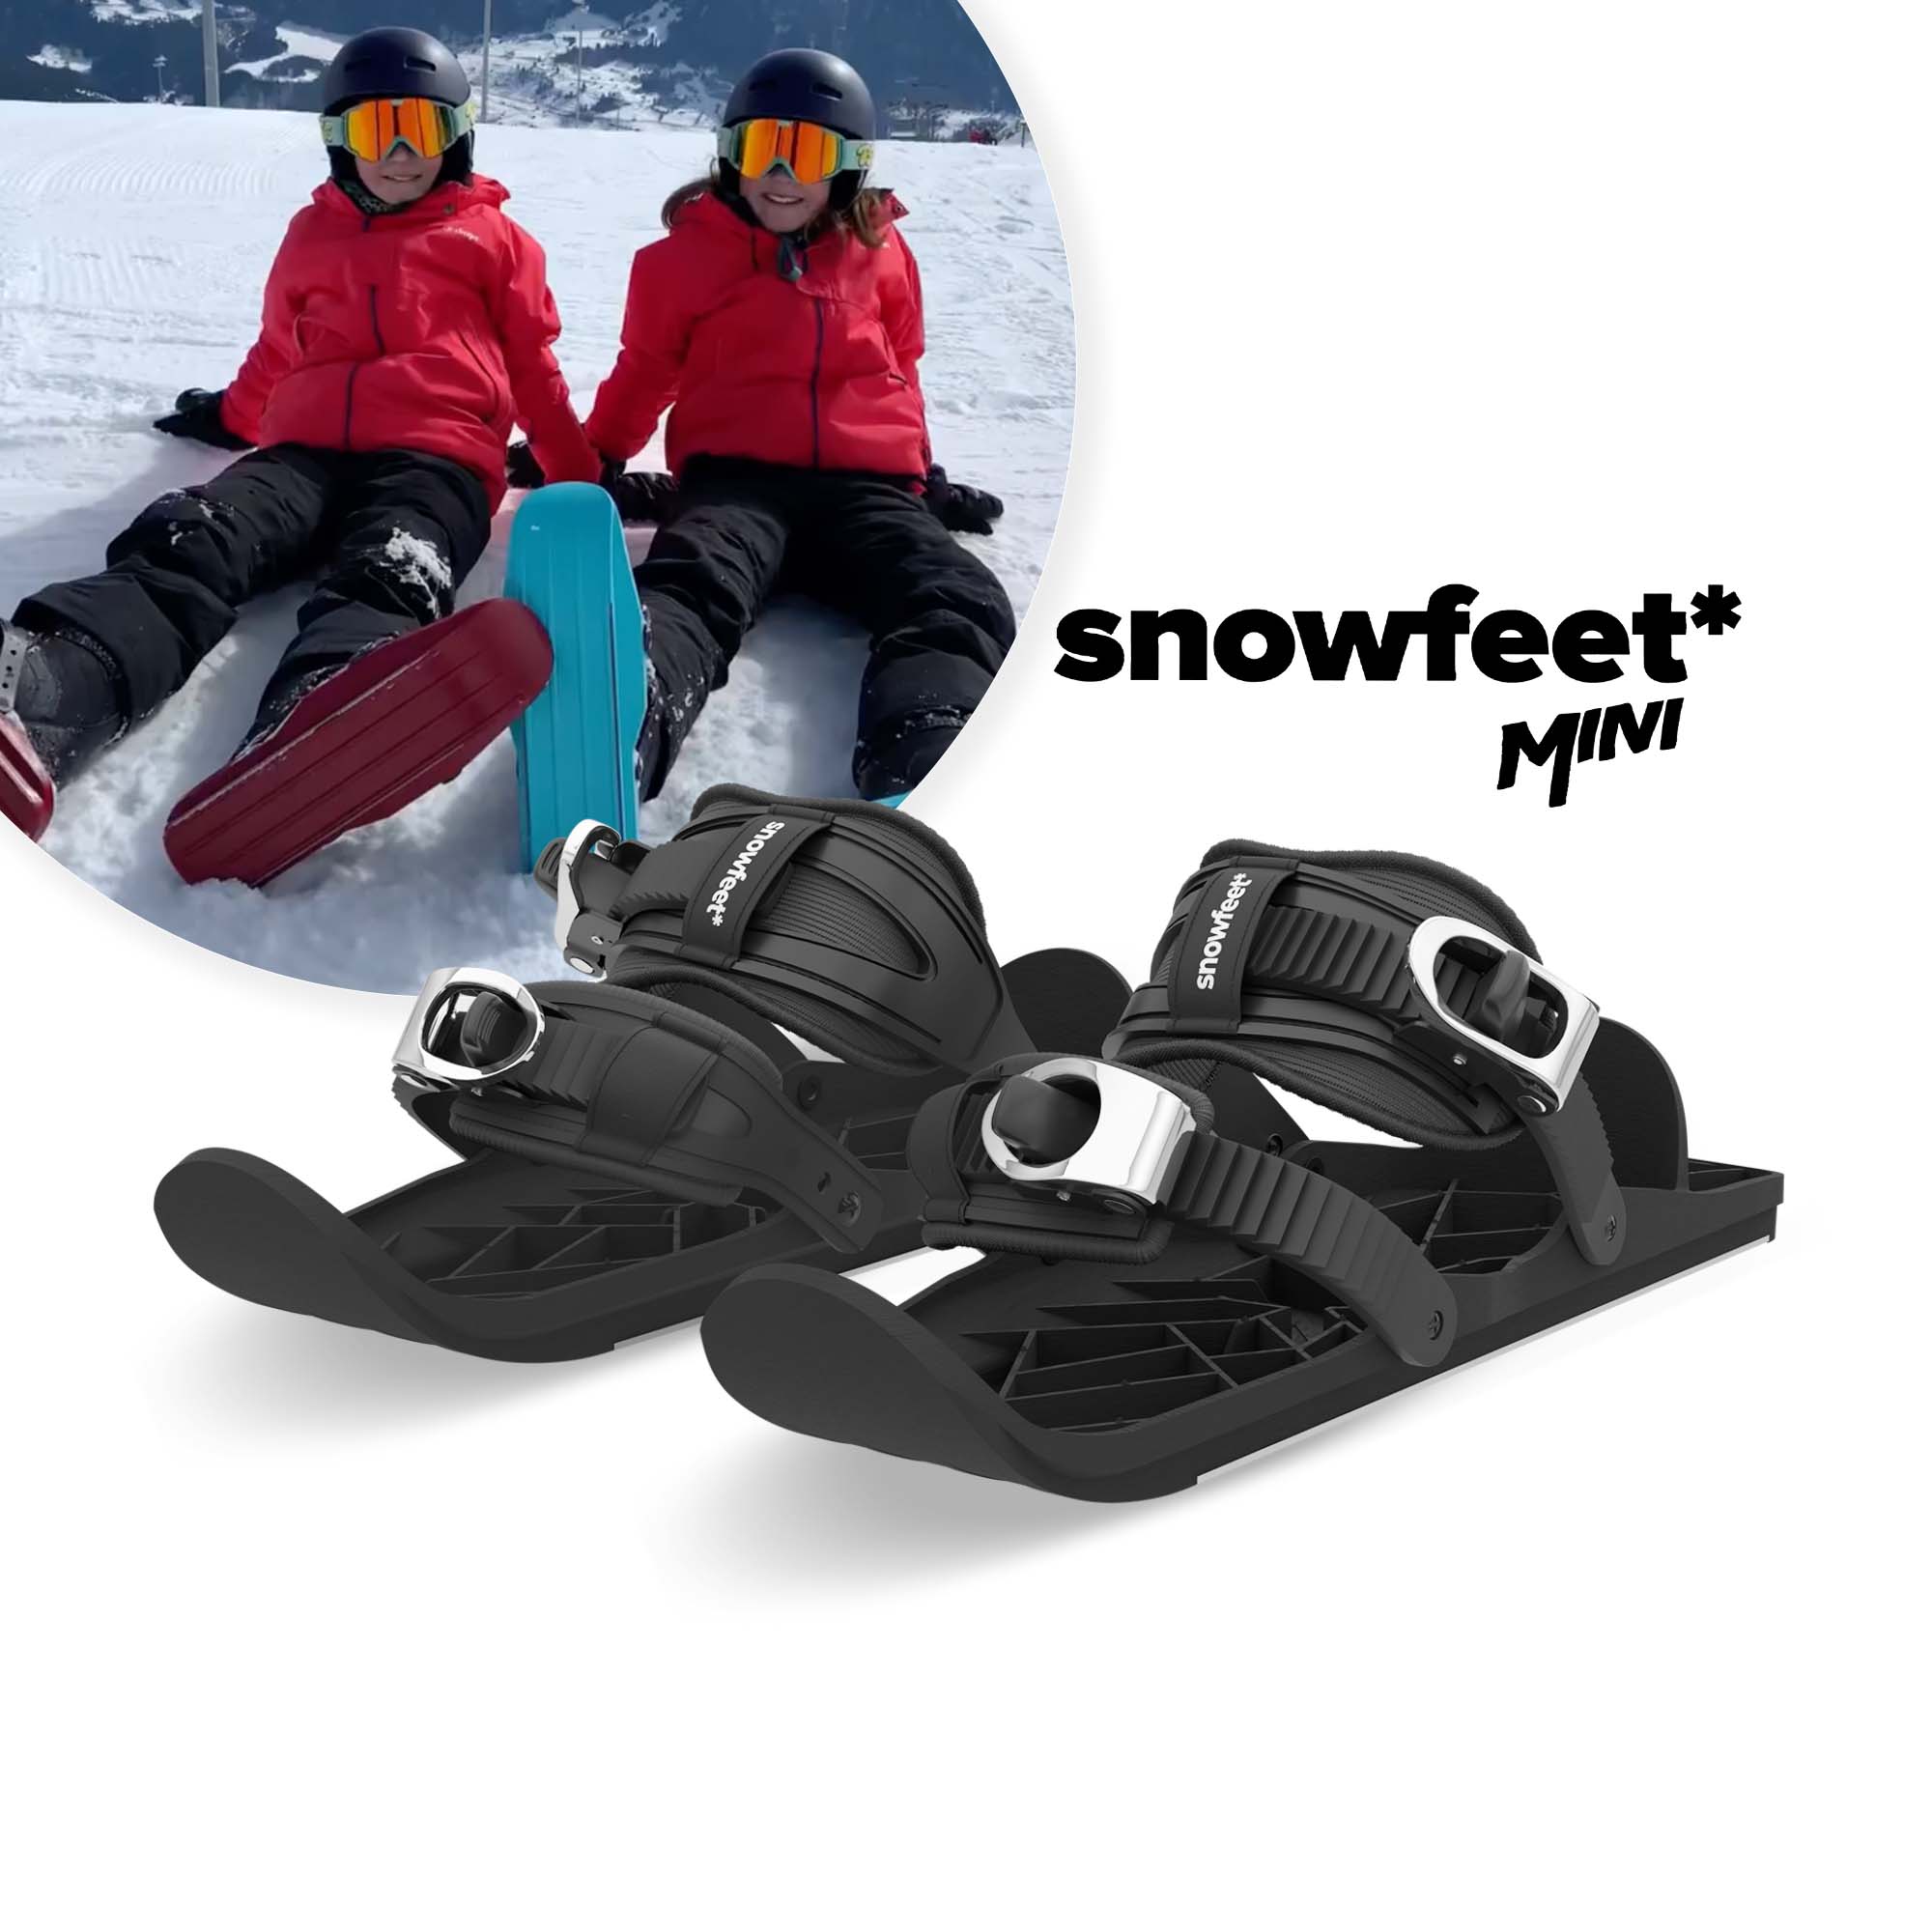 Snowfeet MINI KIDS | Shoe Size < 6 US | Mini Ski Skates